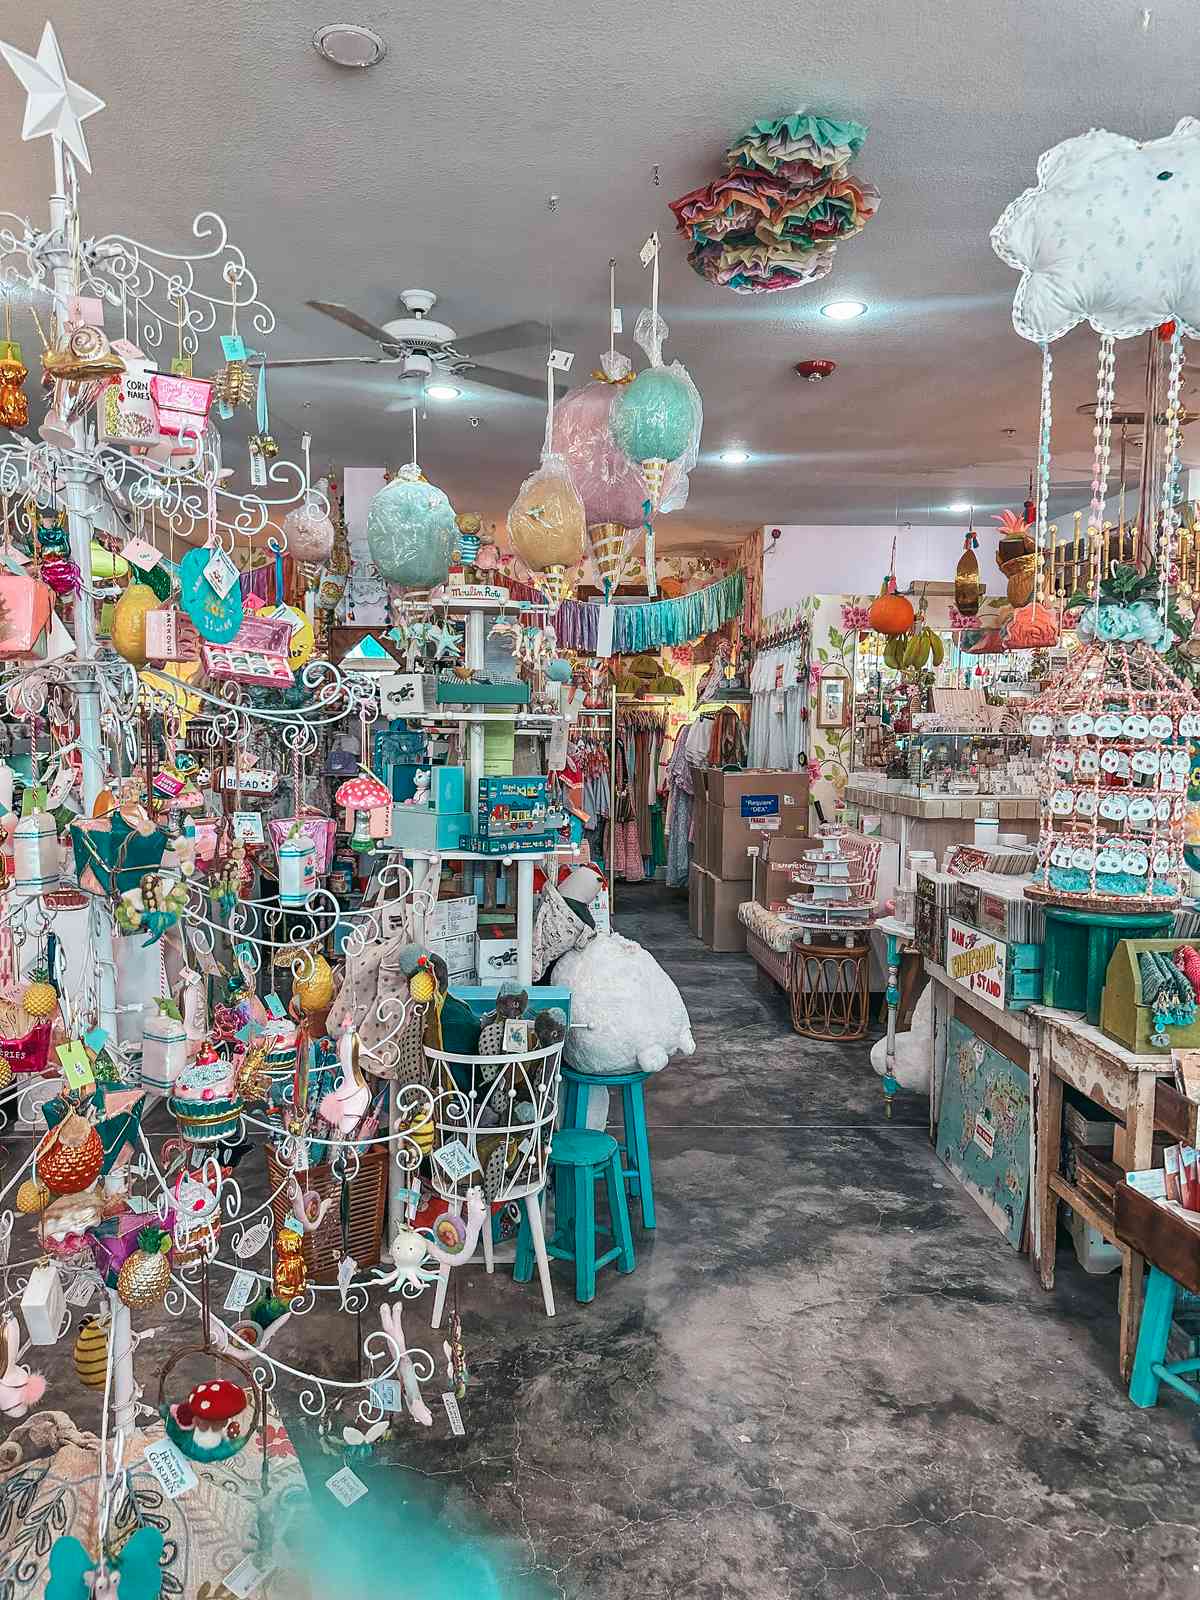 Cute shops AMI